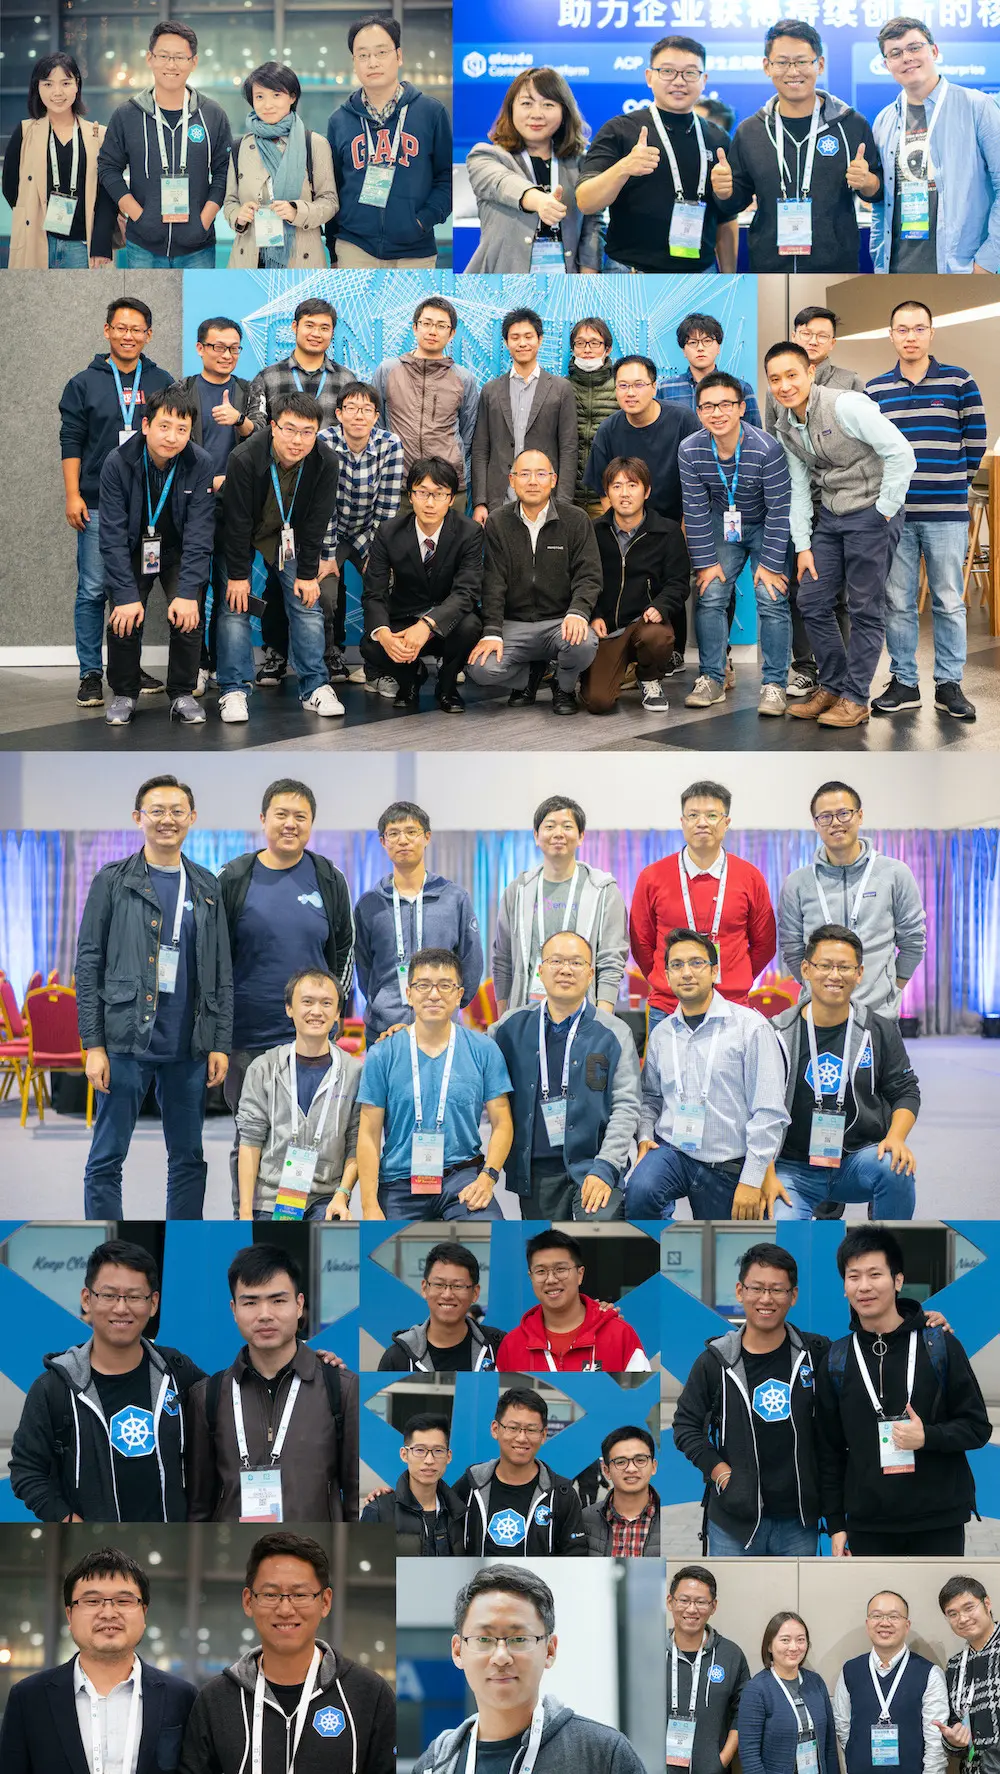 KubeCon&amp;CloudNativeCon China 上海 2018